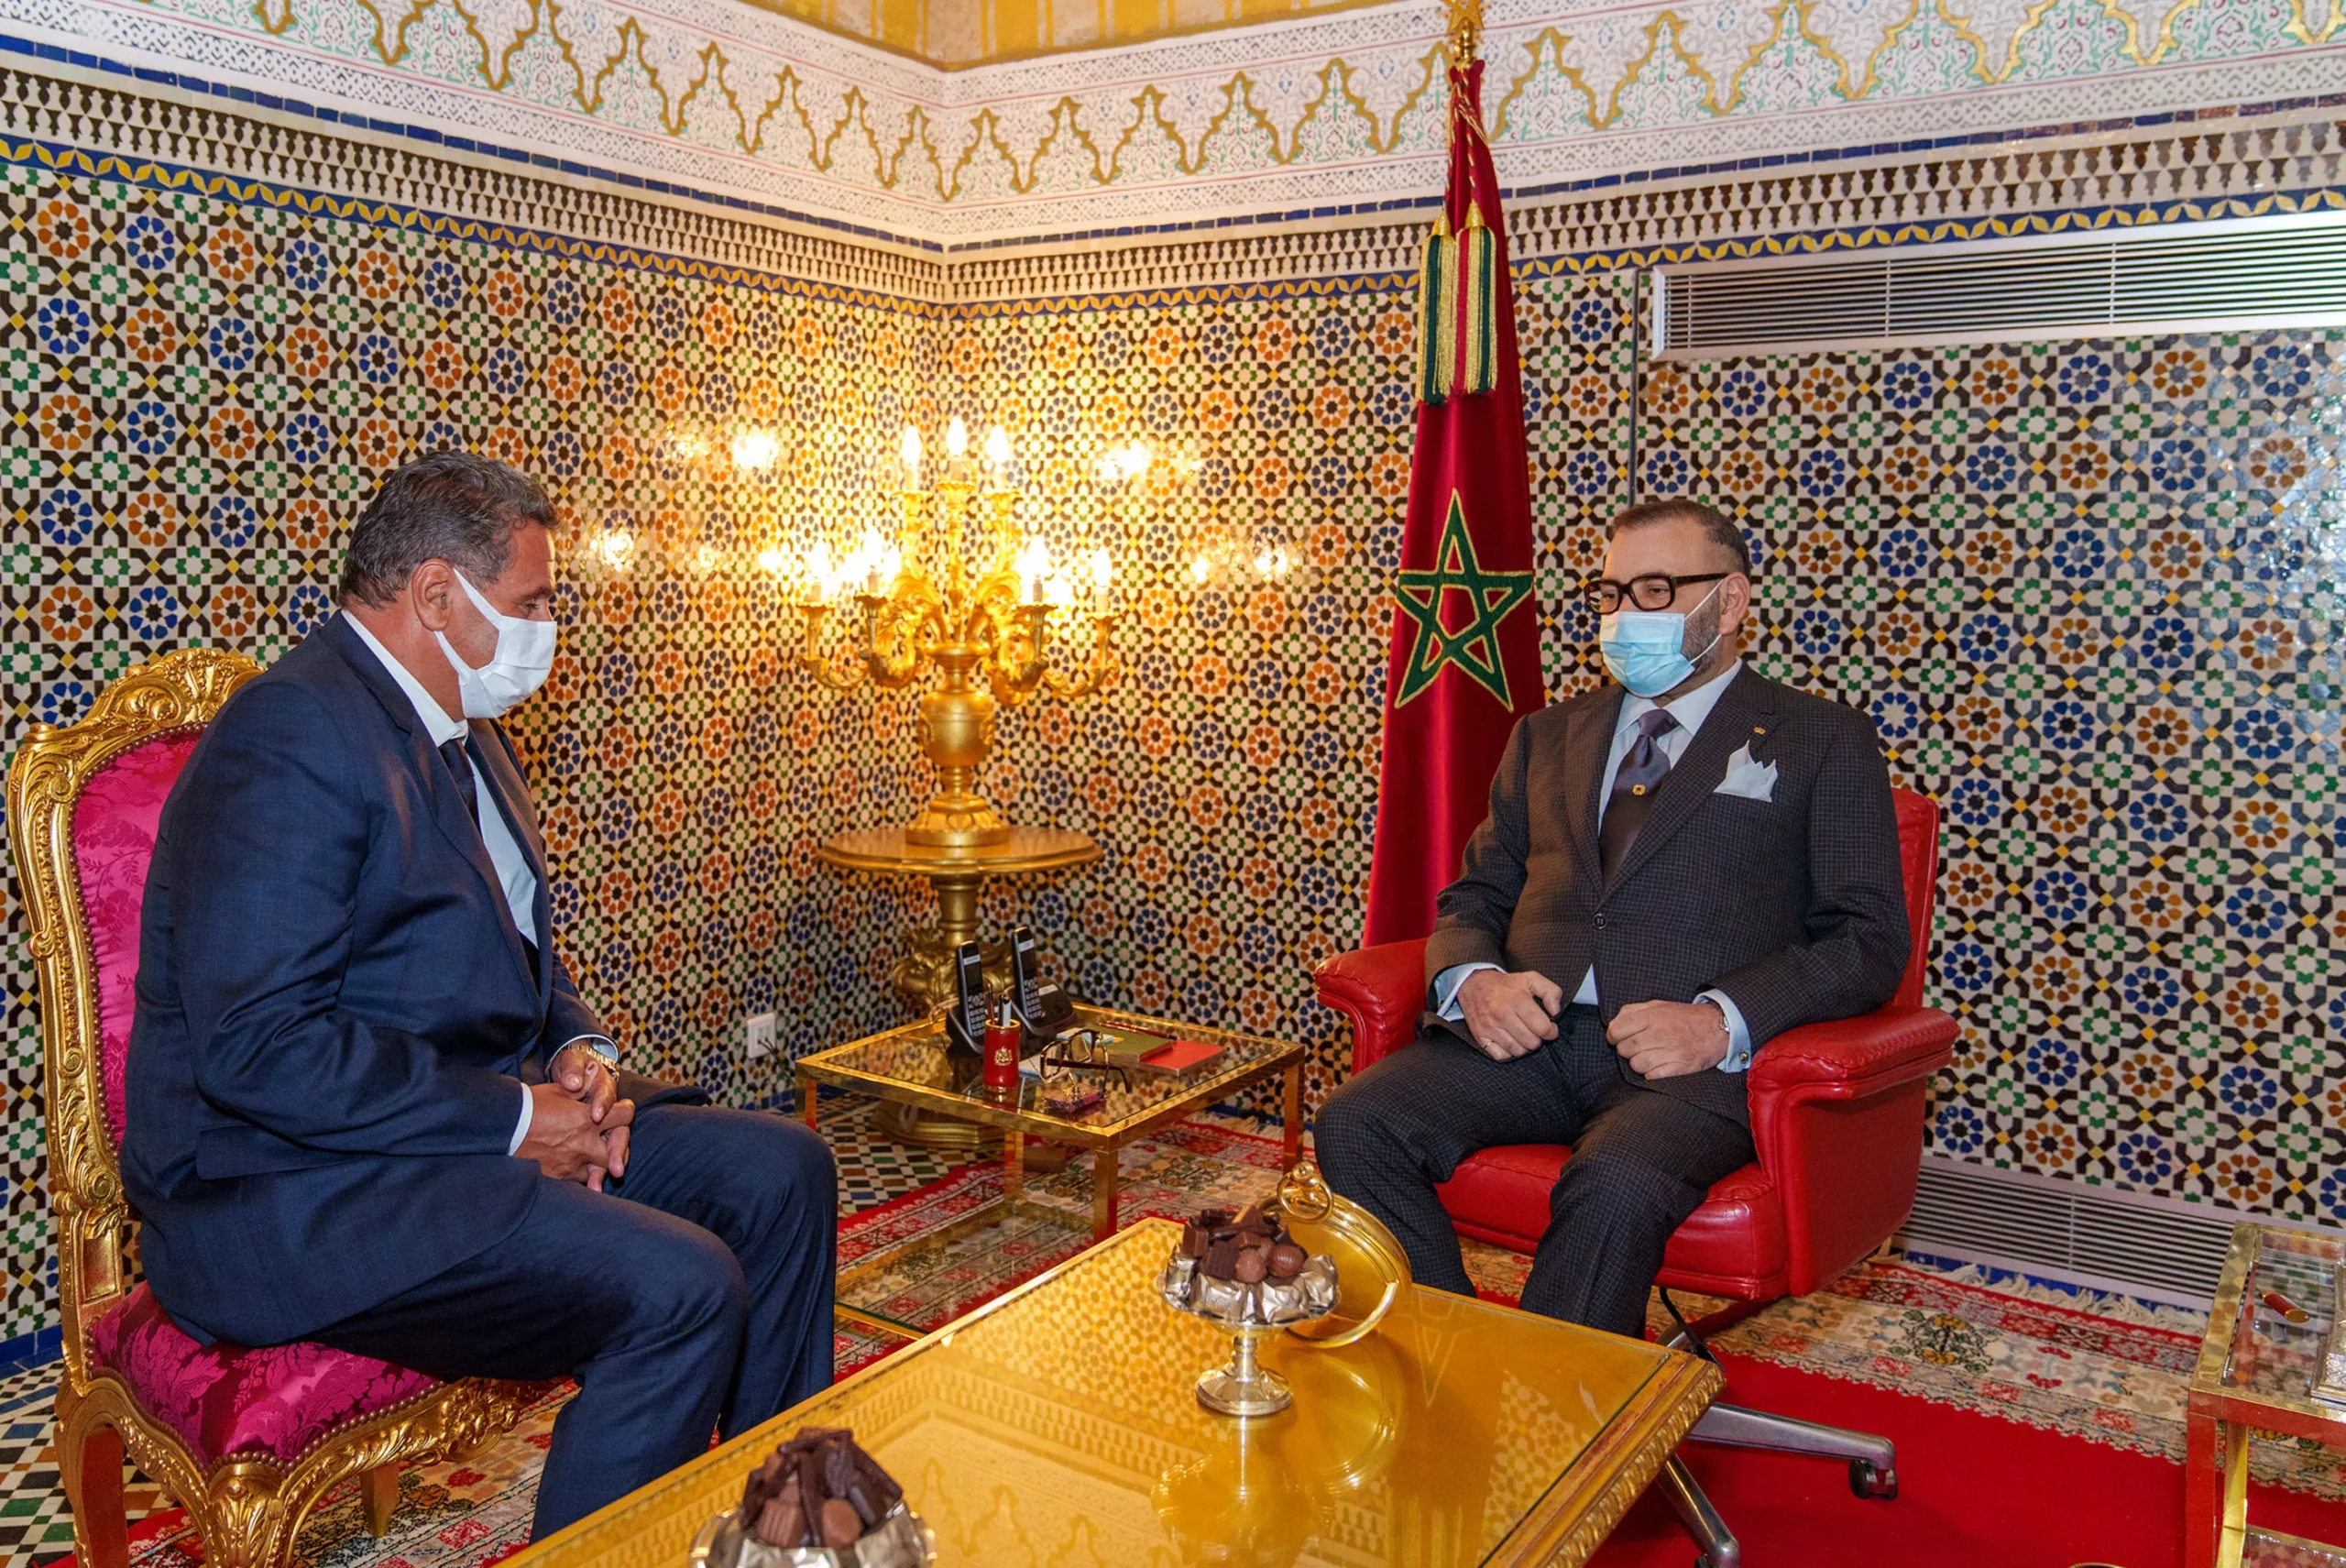 Maroc: Le Roi Mohammed VI charge Aziz Akhannouch de former le nouveau gouvernement